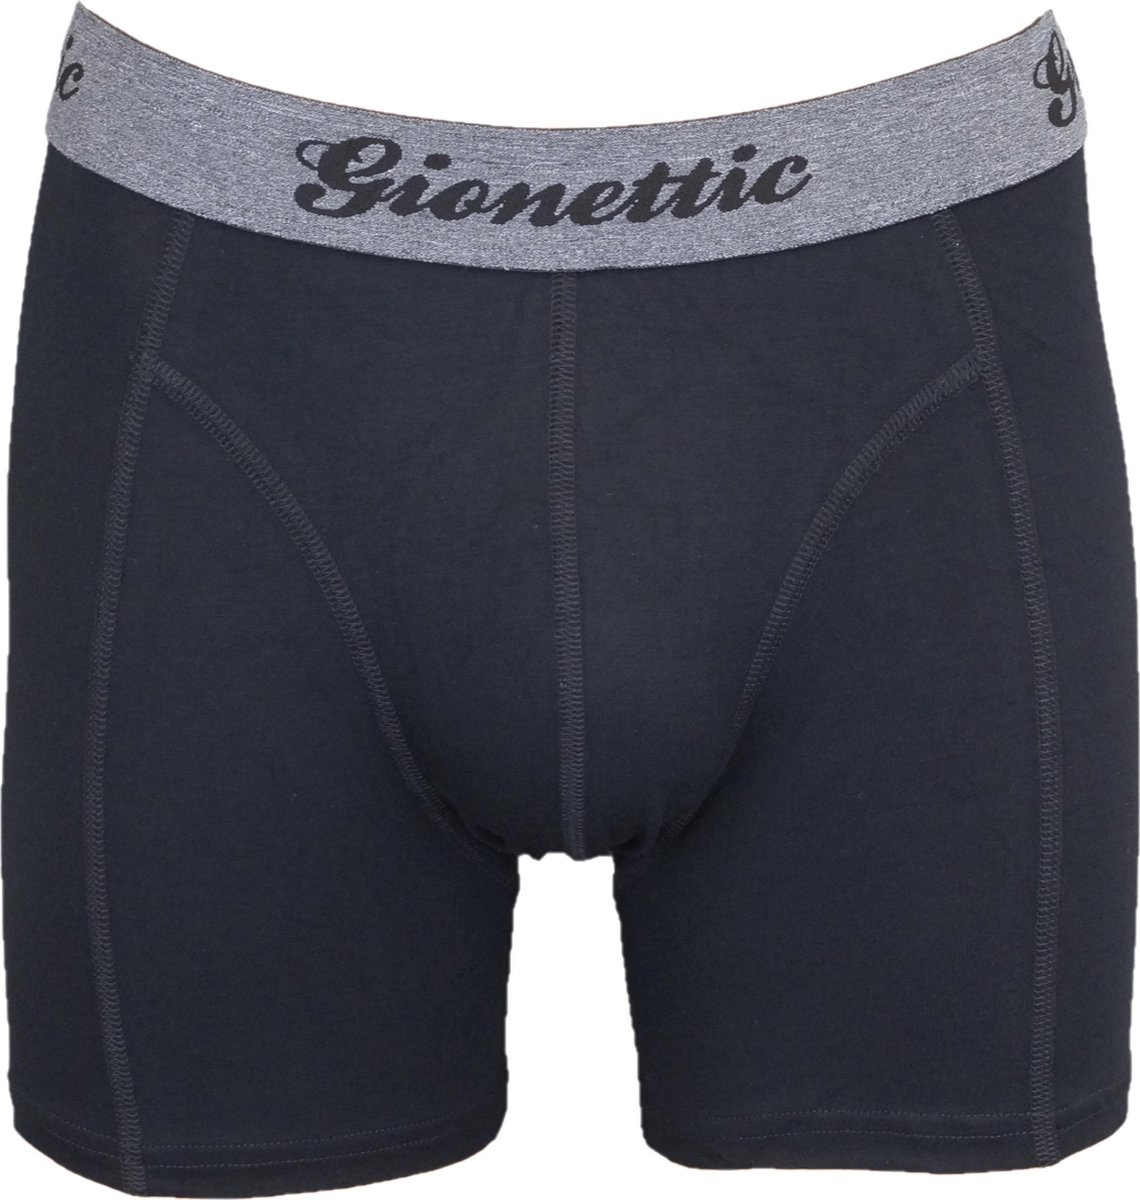 Gionettic Modal Heren boxershort Zwart maat XL